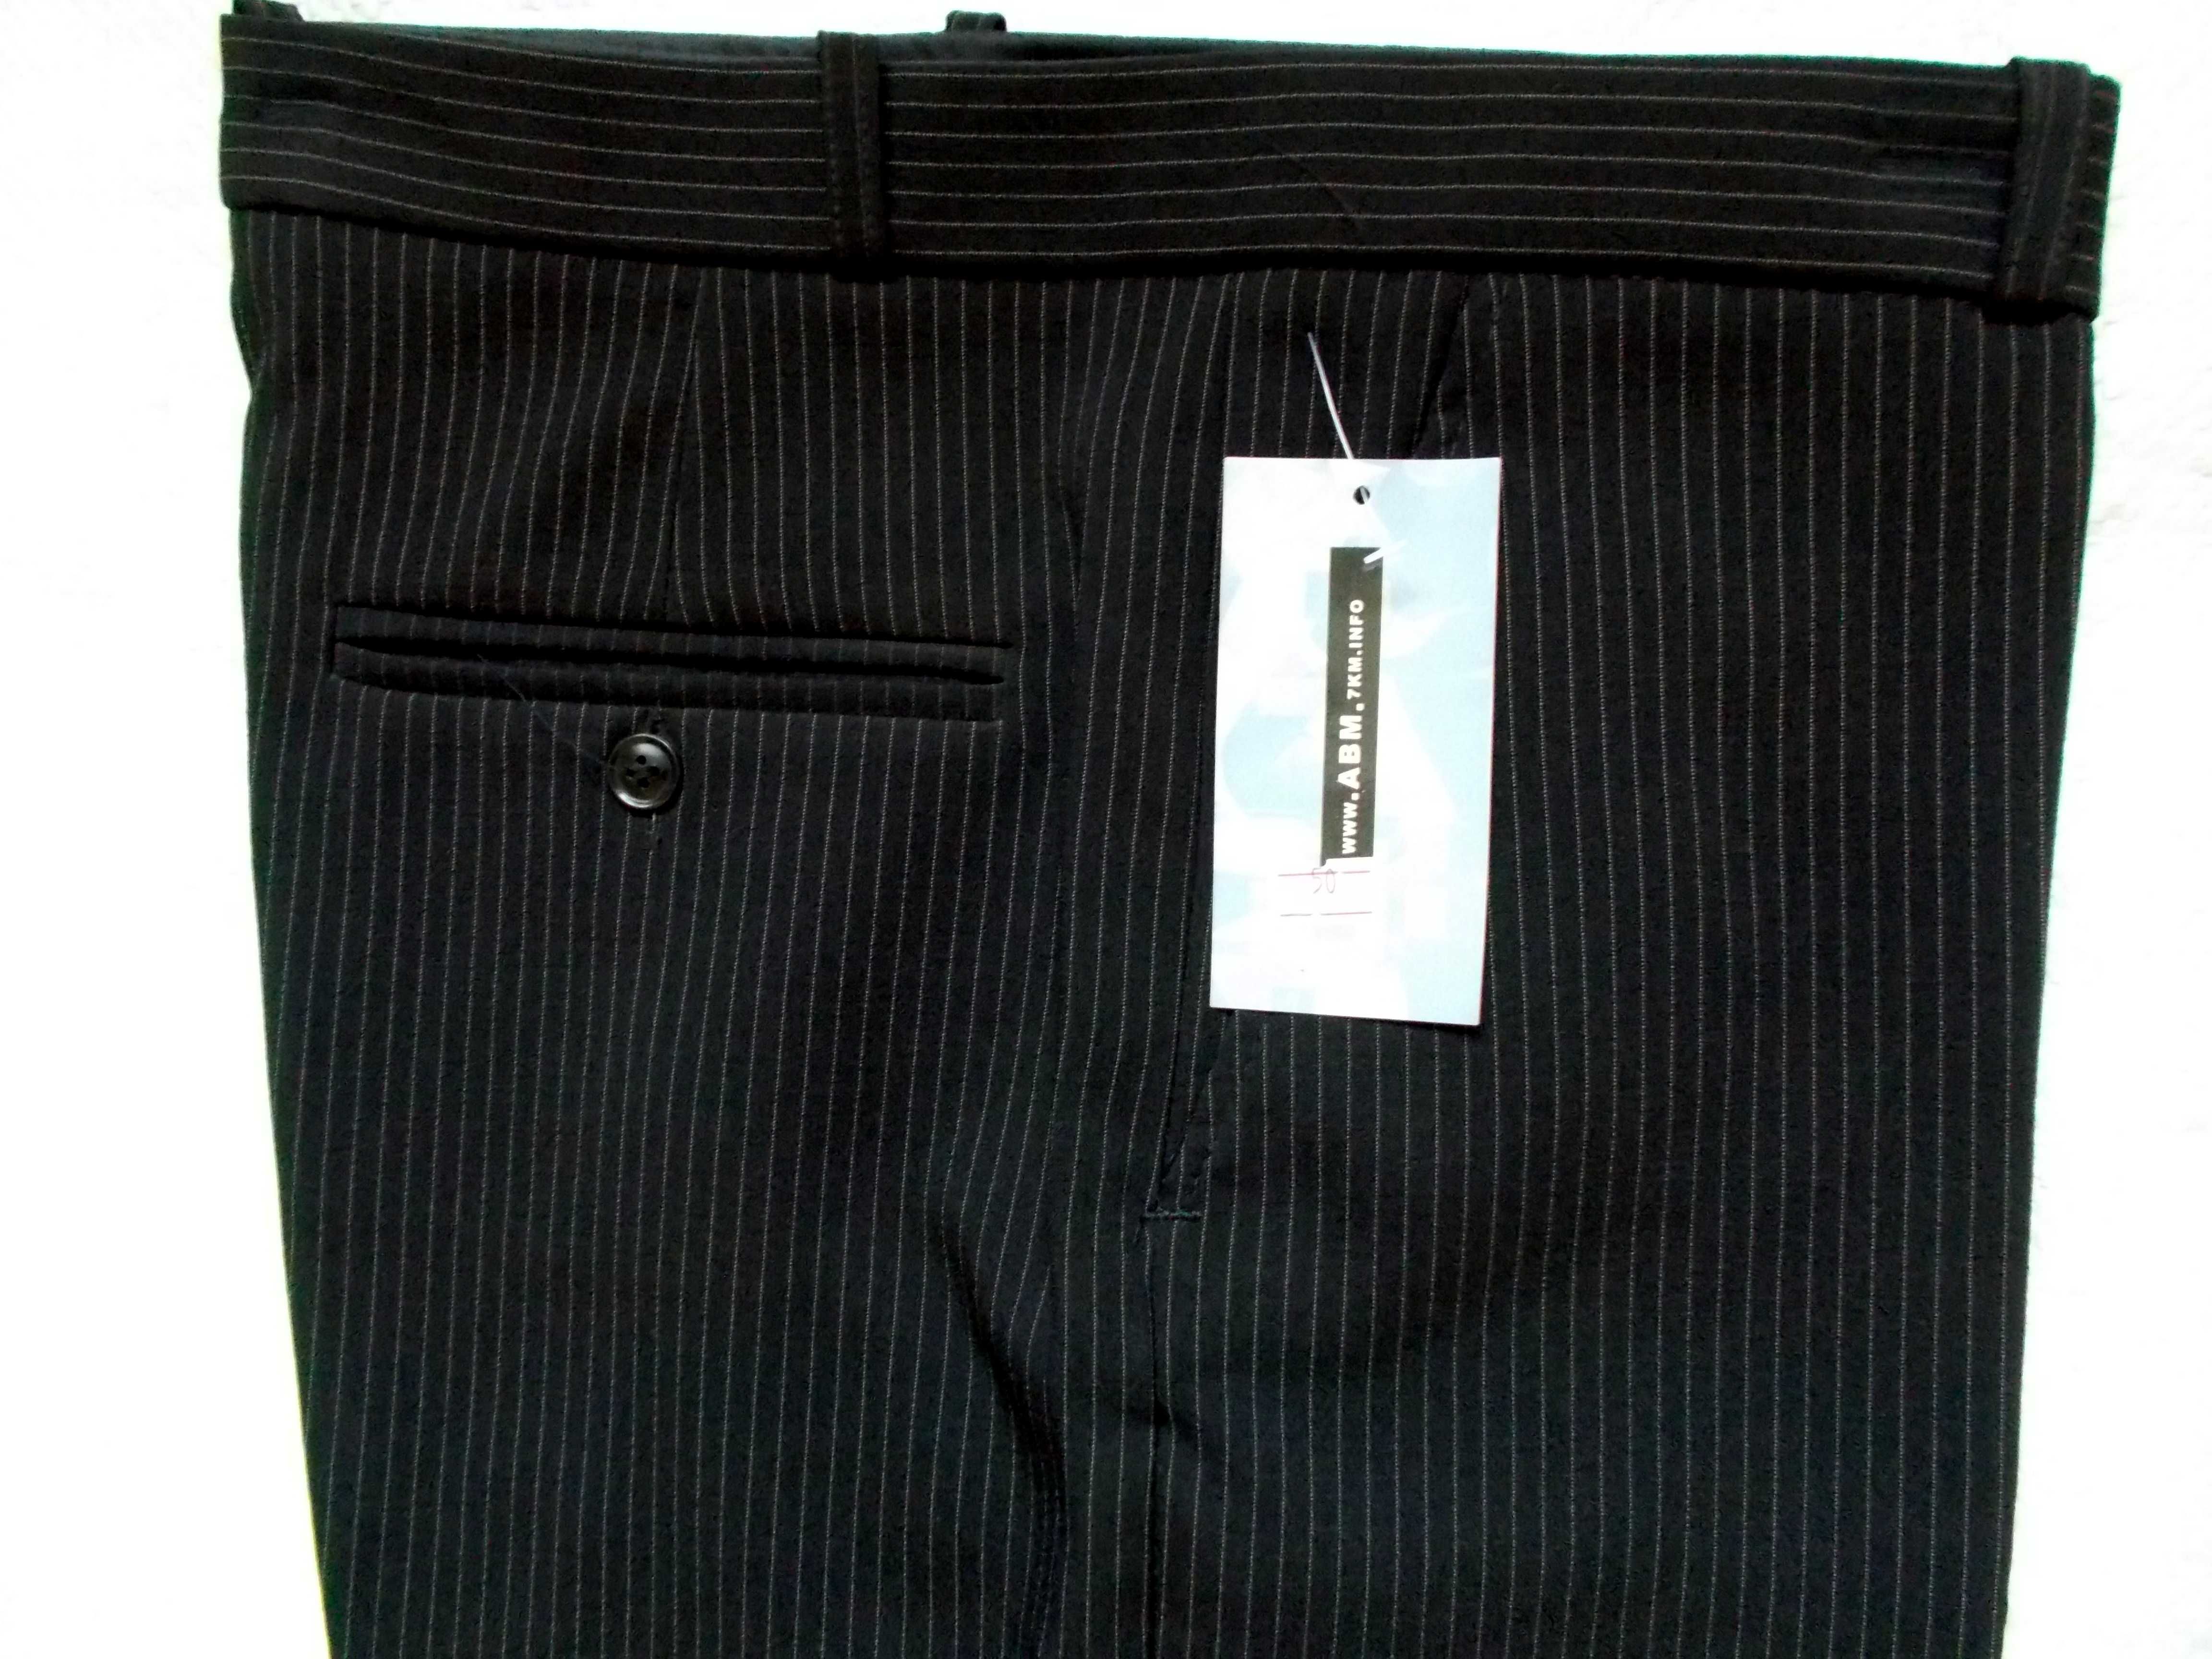 брюки мужские, классические, 50р. 86 см в поясе,новые